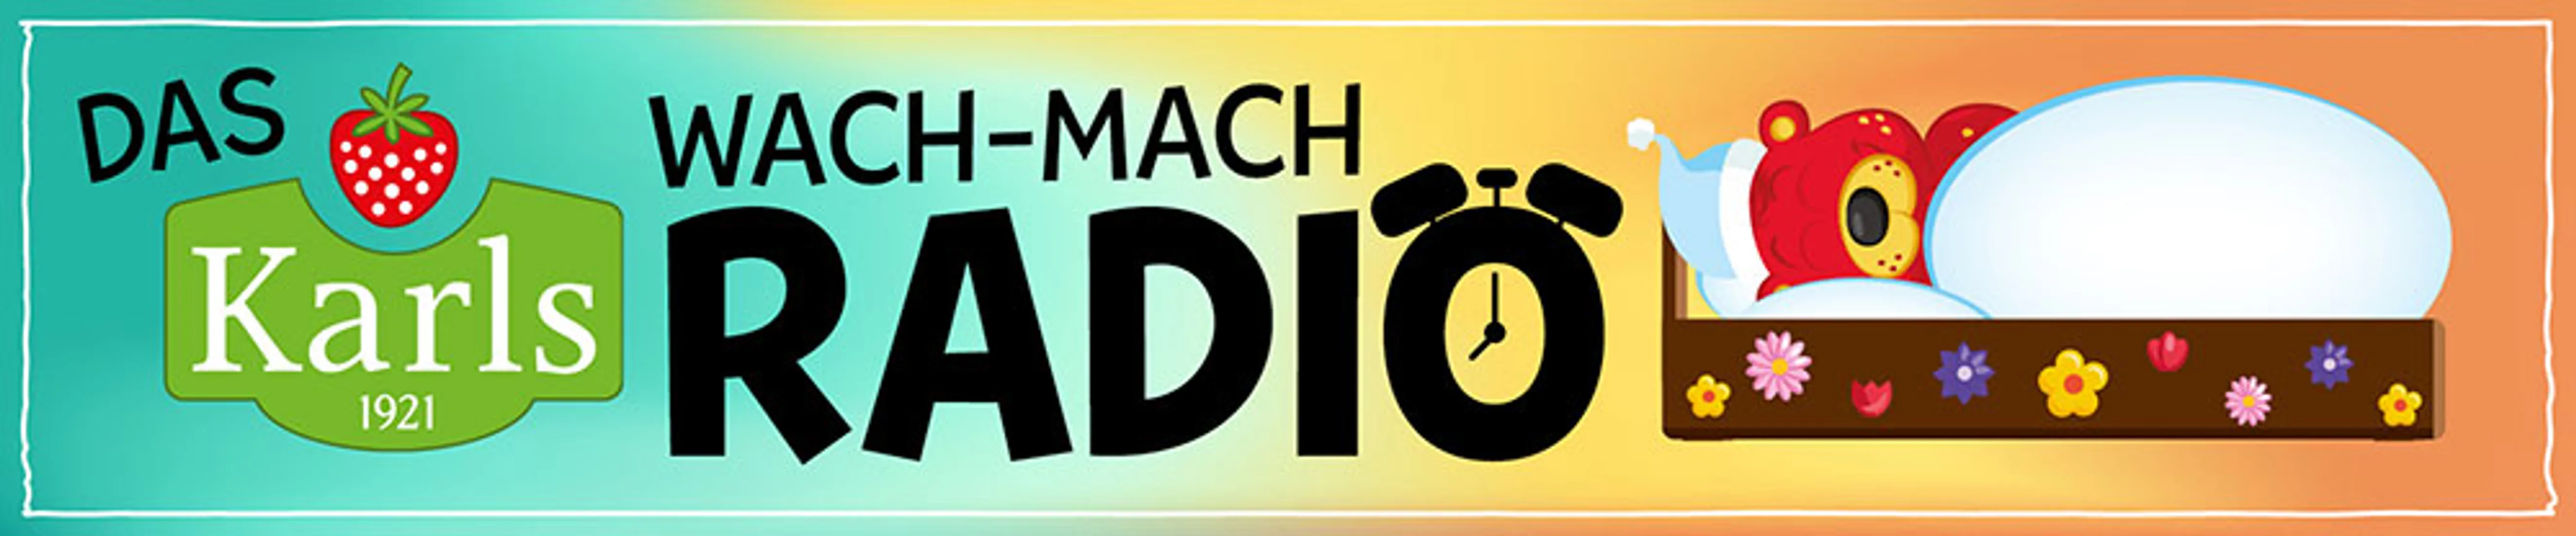 Wach-Mach-Radio